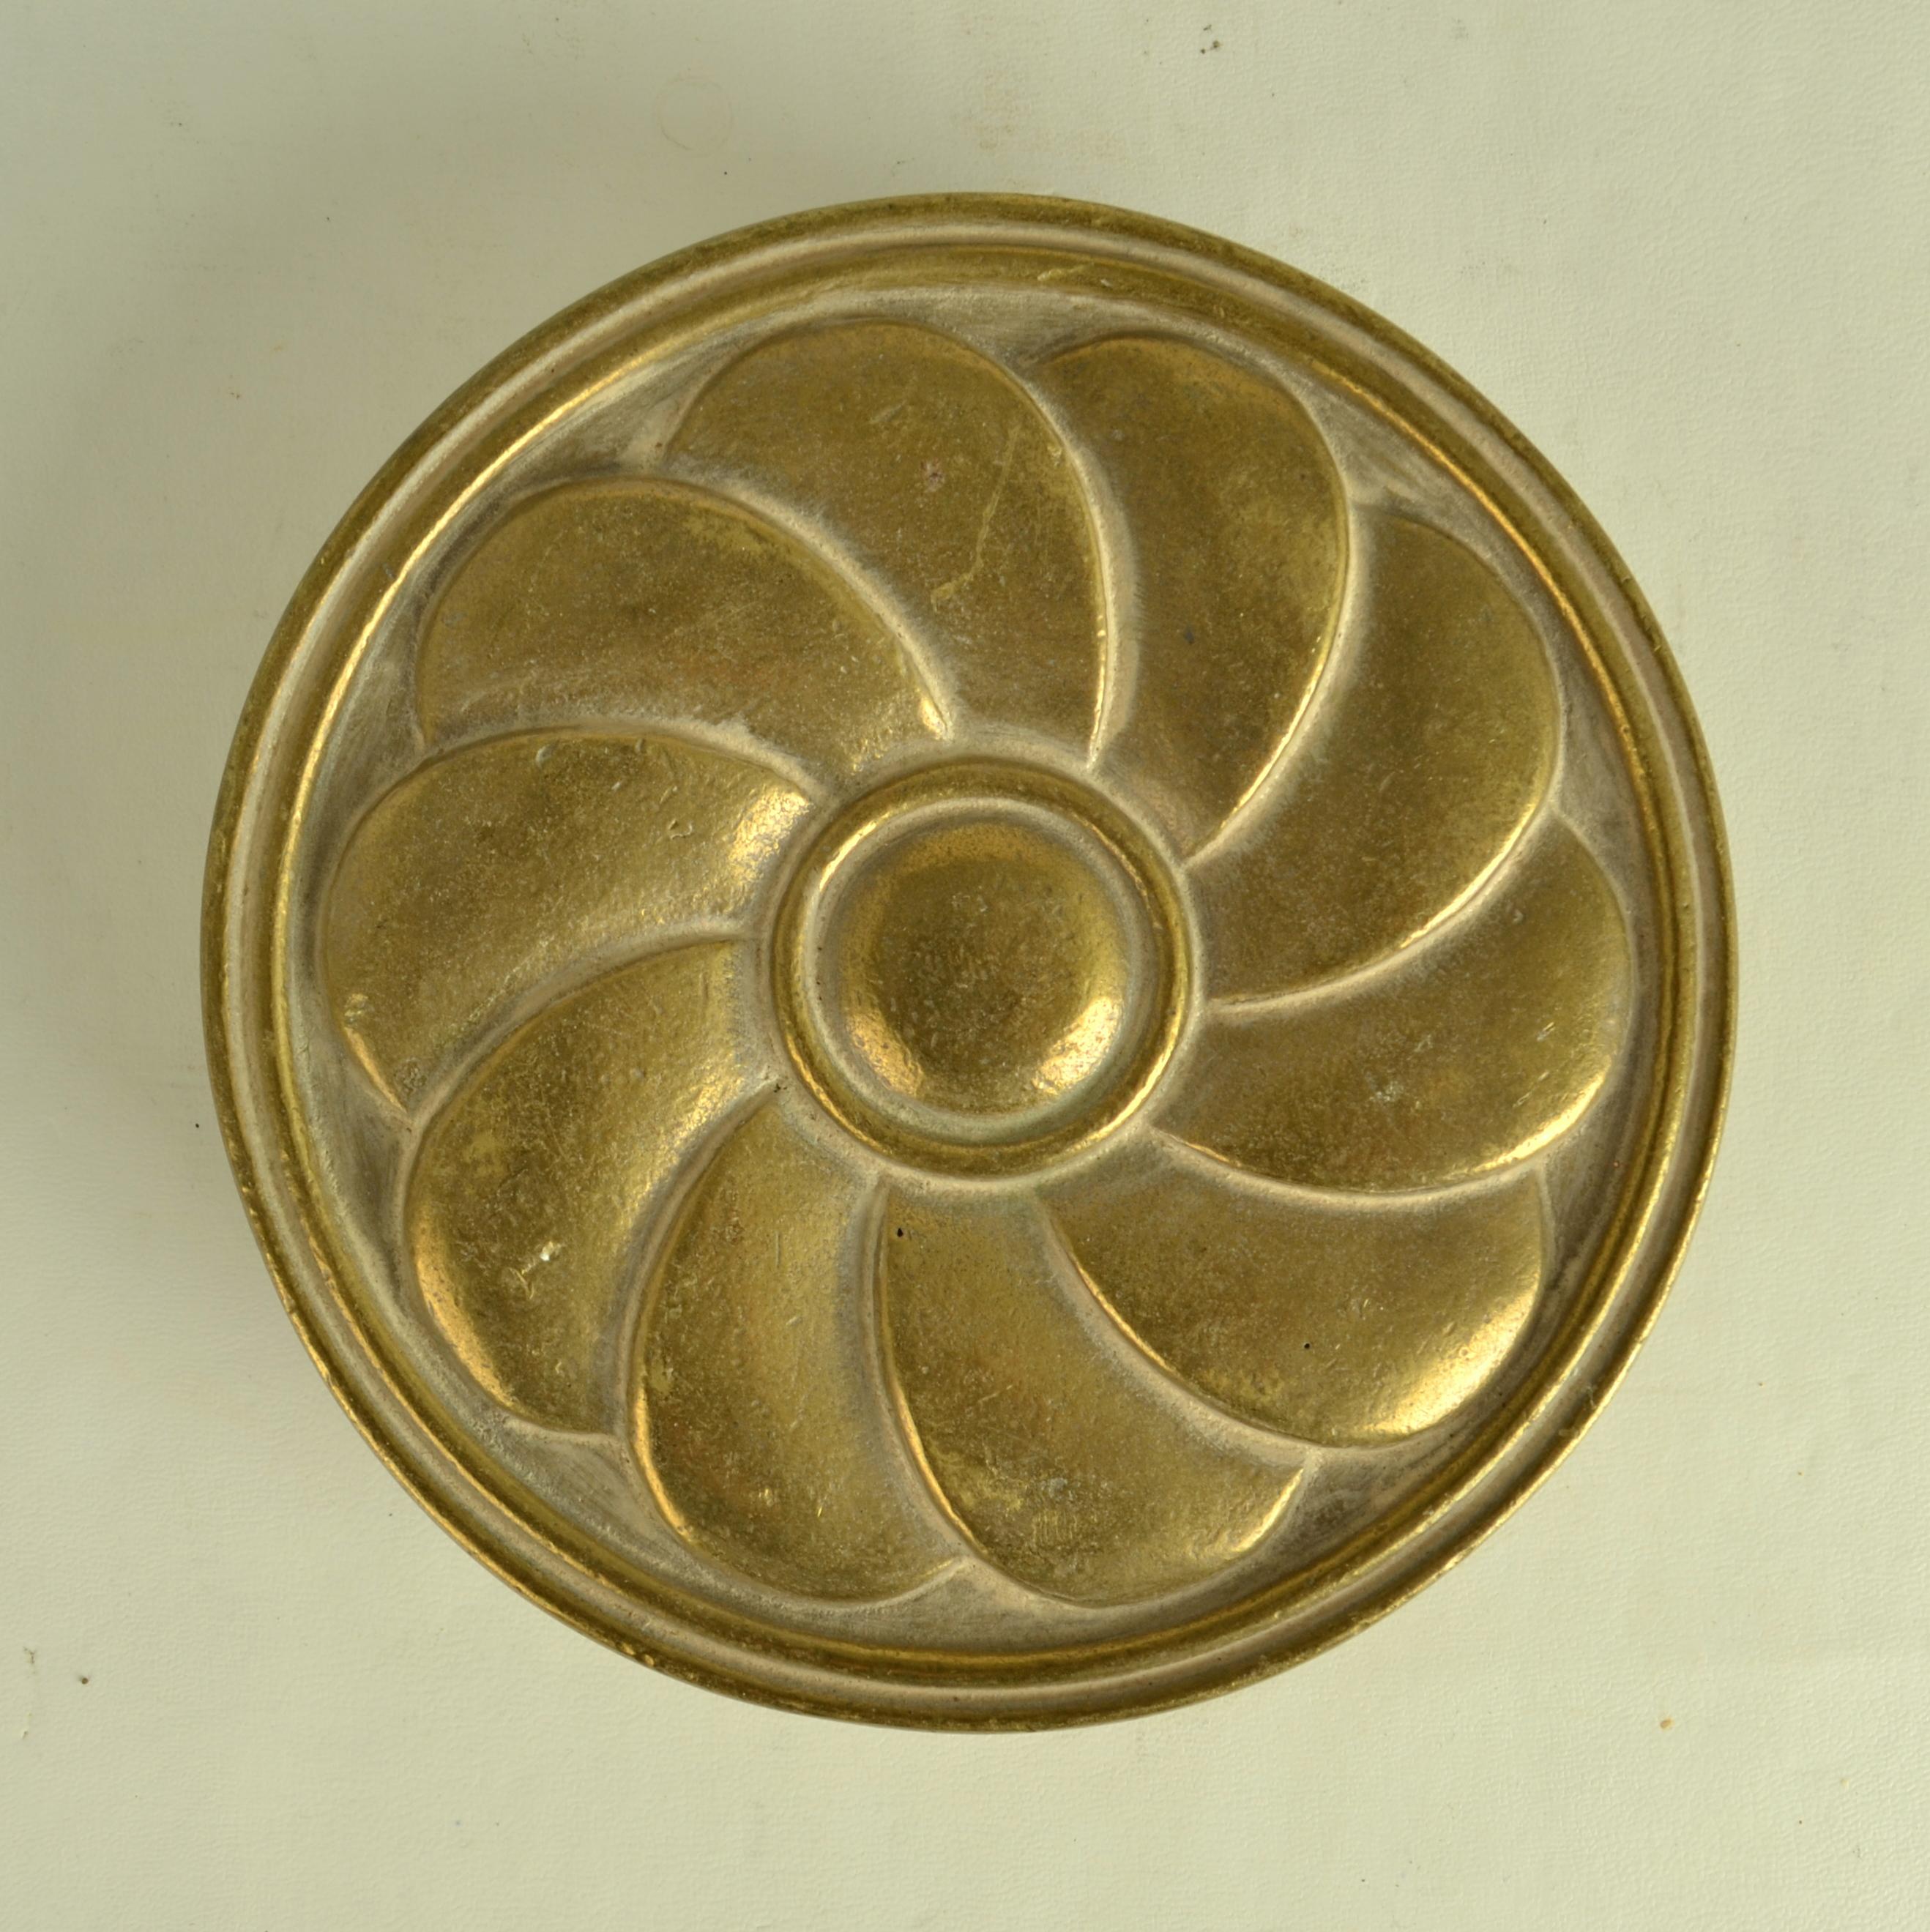 Ein Paar runde Türdrücker und -zieher aus Bronze mit geometrischem Blumenrelief sind sehr dekorativ. Sie verleihen Türen einen außergewöhnlichen Charakter und werden in den 1970er Jahren hergestellt.
Die identischen Griffe können an Doppeltüren